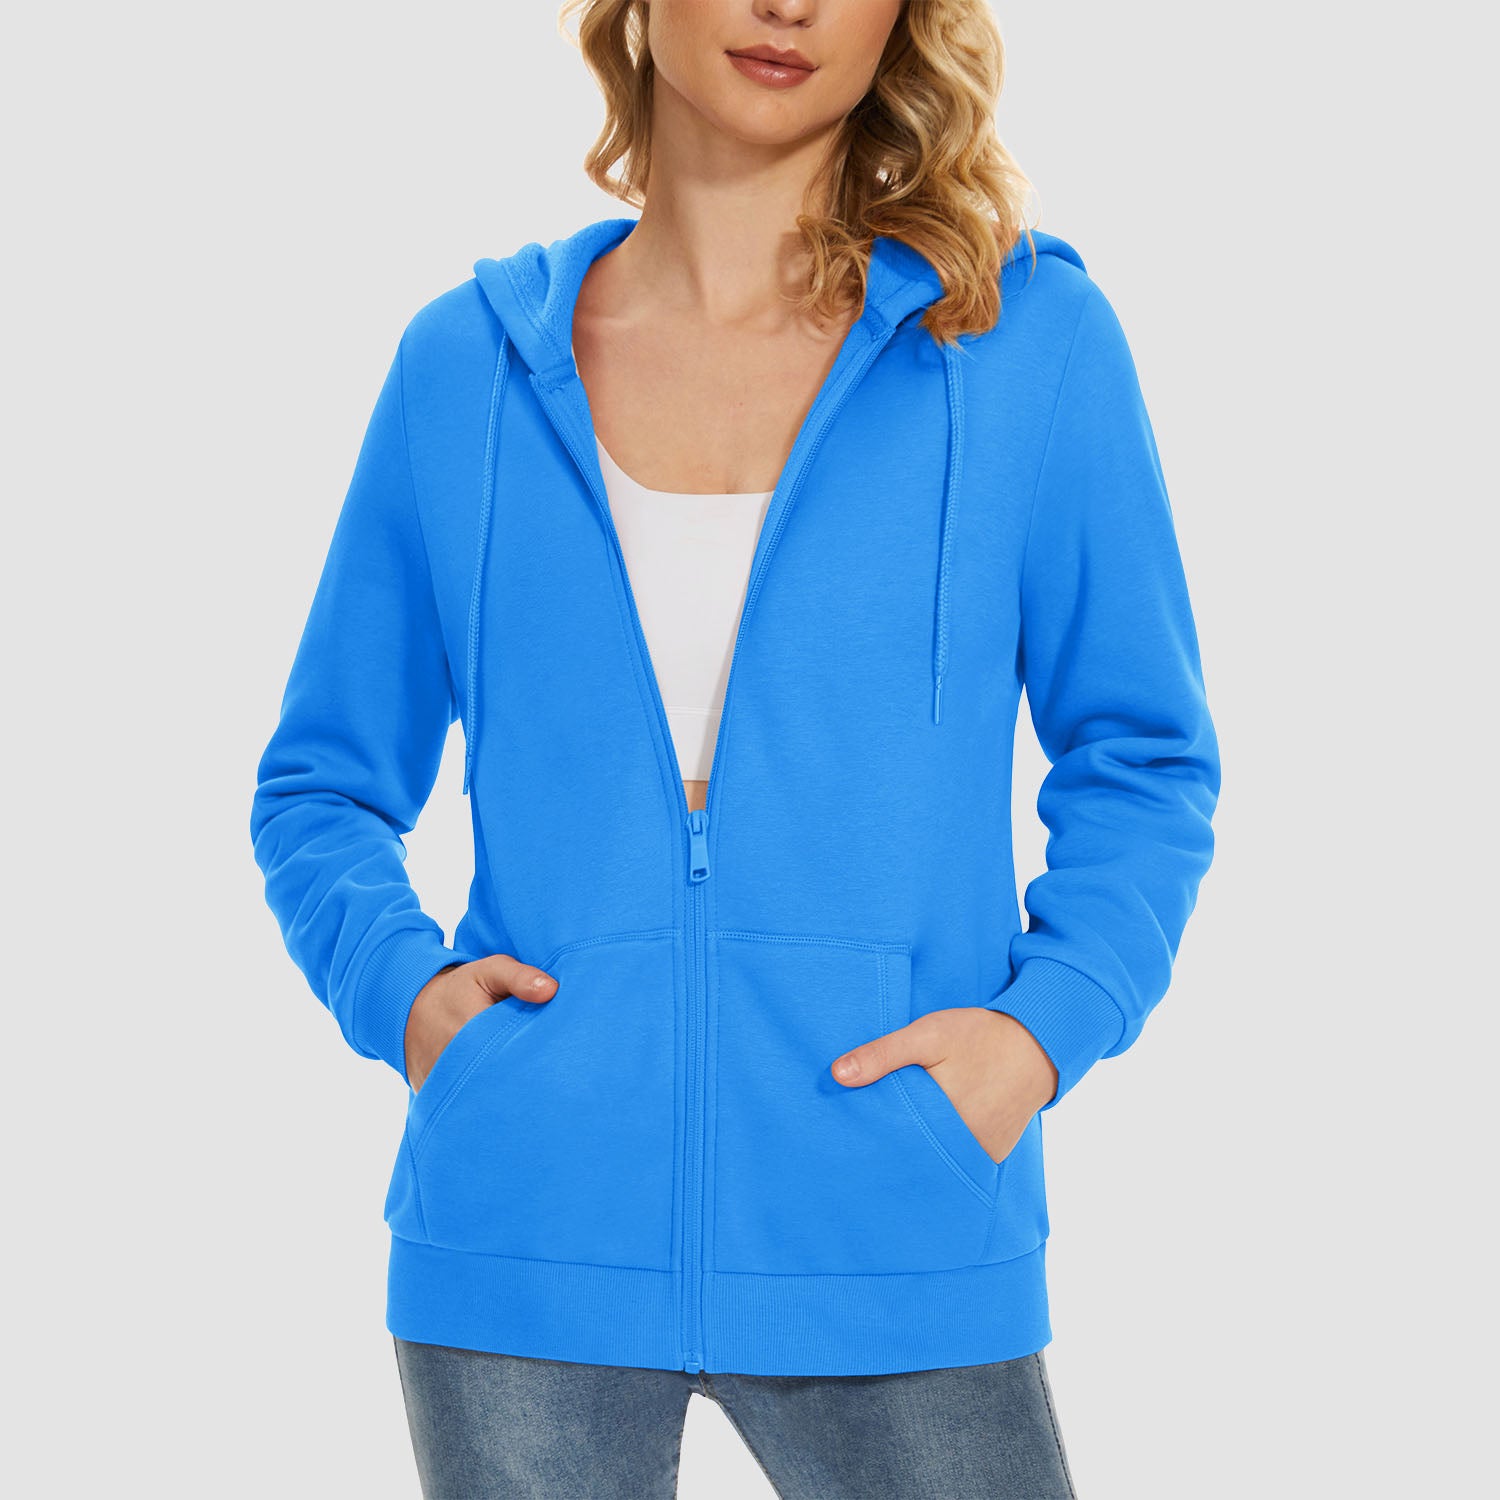 Women's Jacket Fleece Lining Hoodie Jacket Full Zip Up Casual Coat with Pockets